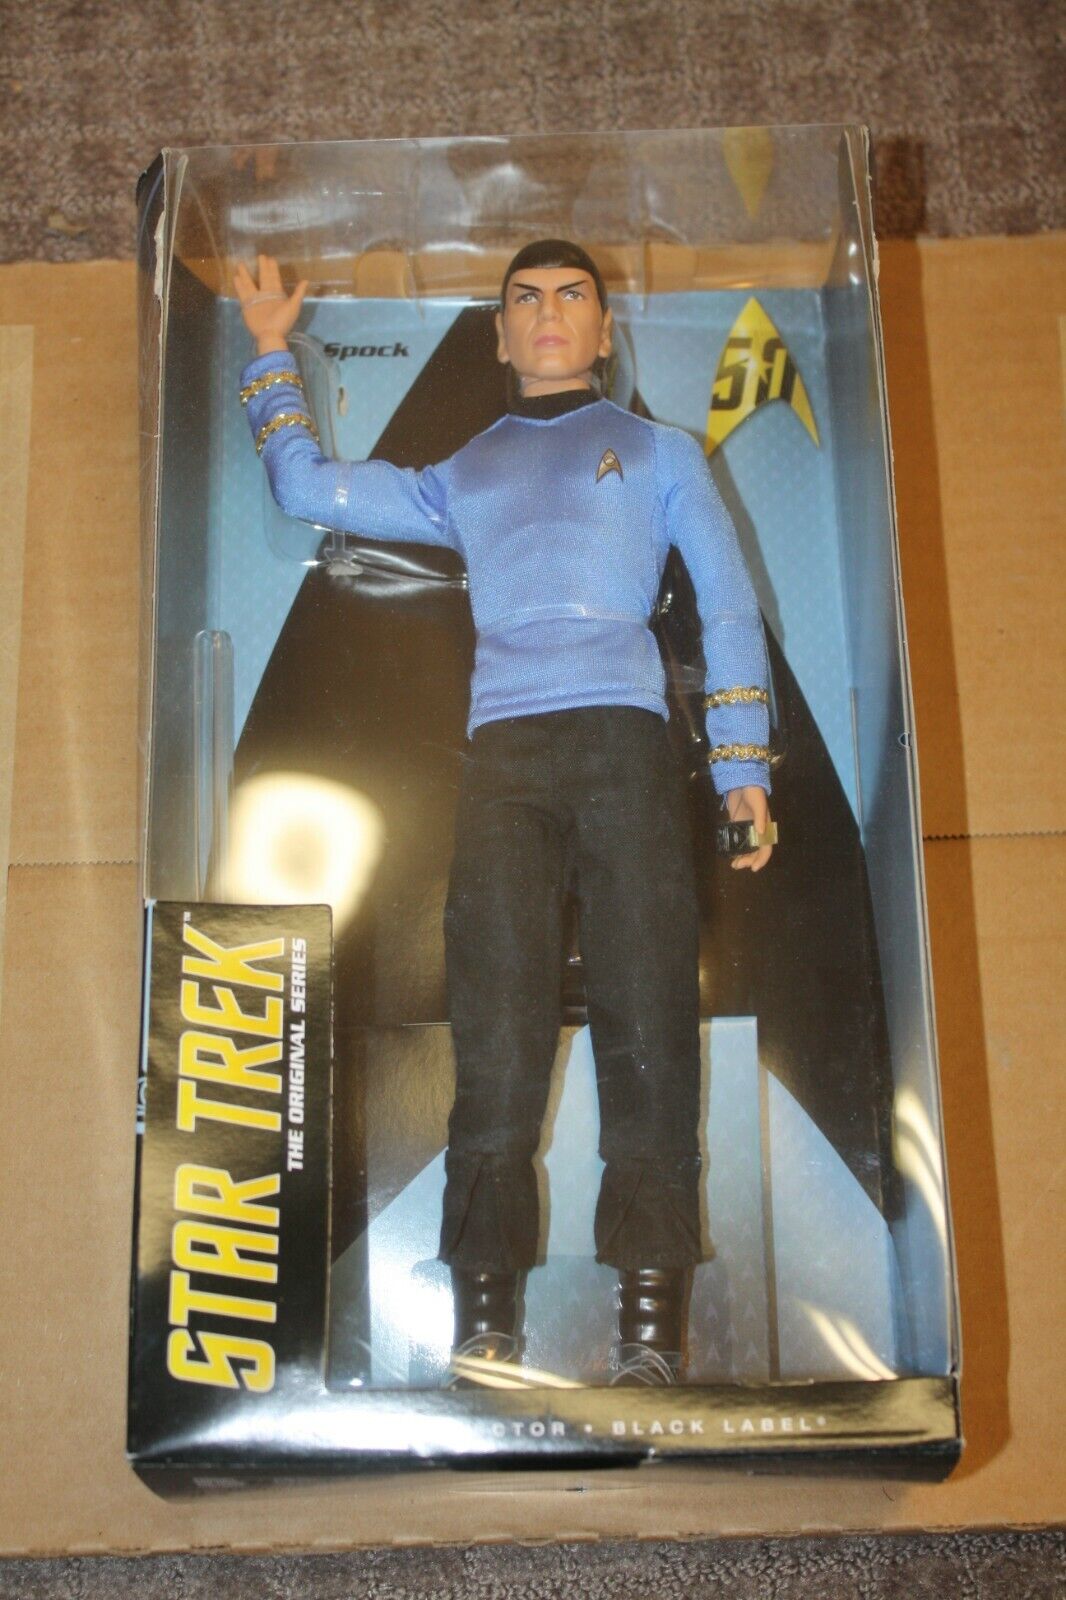 Mr Spock Star Trek Barbie Collector Black Label Doll 